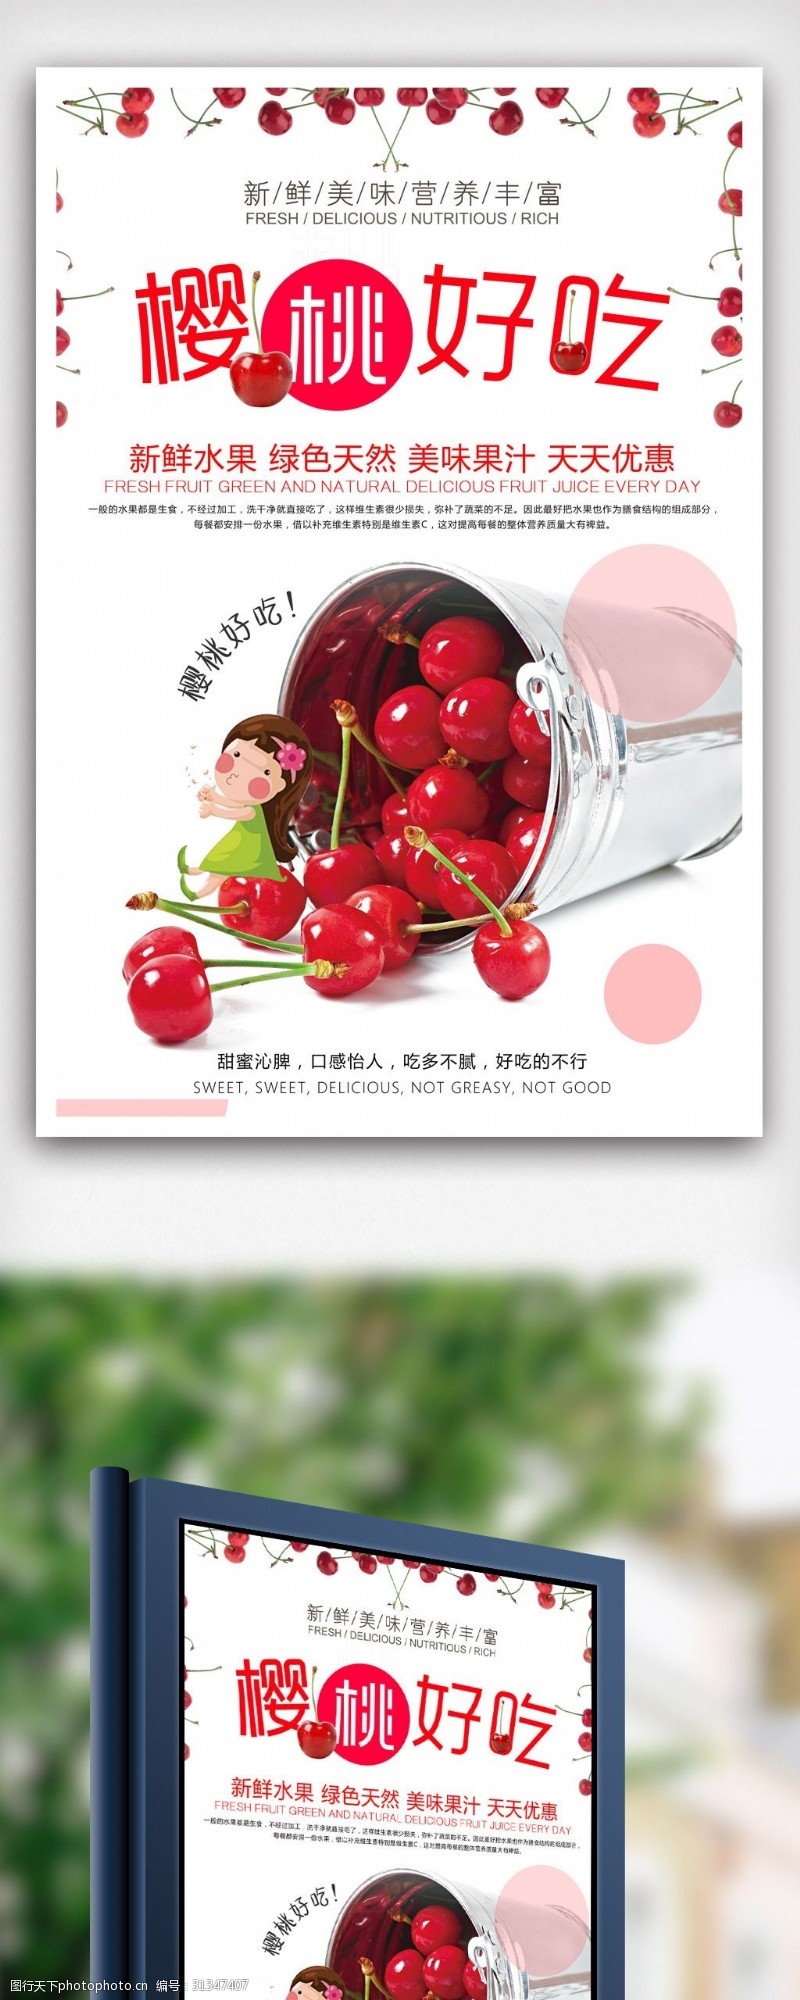 超市版面新鲜樱桃活动促销宣传海报设计.psd